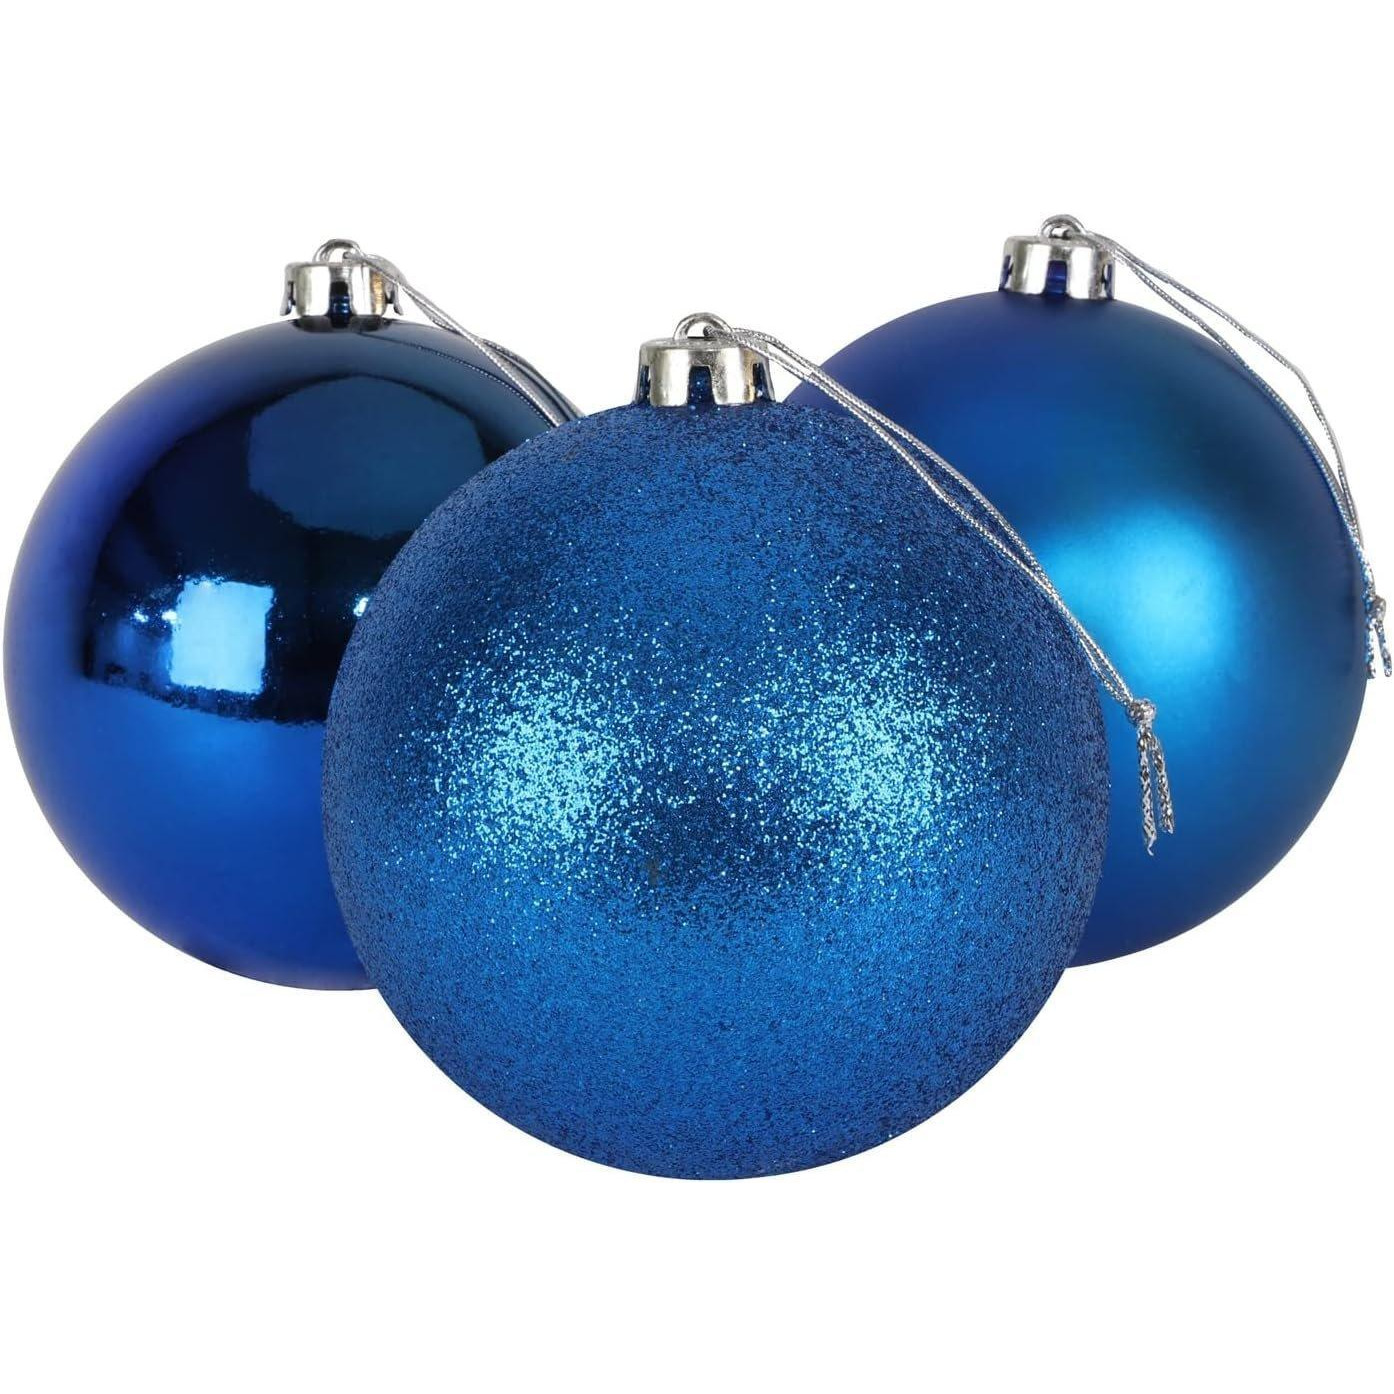 15cm/3Pcs Christmas Baubles Shatterproof Blue,Tree Decorations - image 1